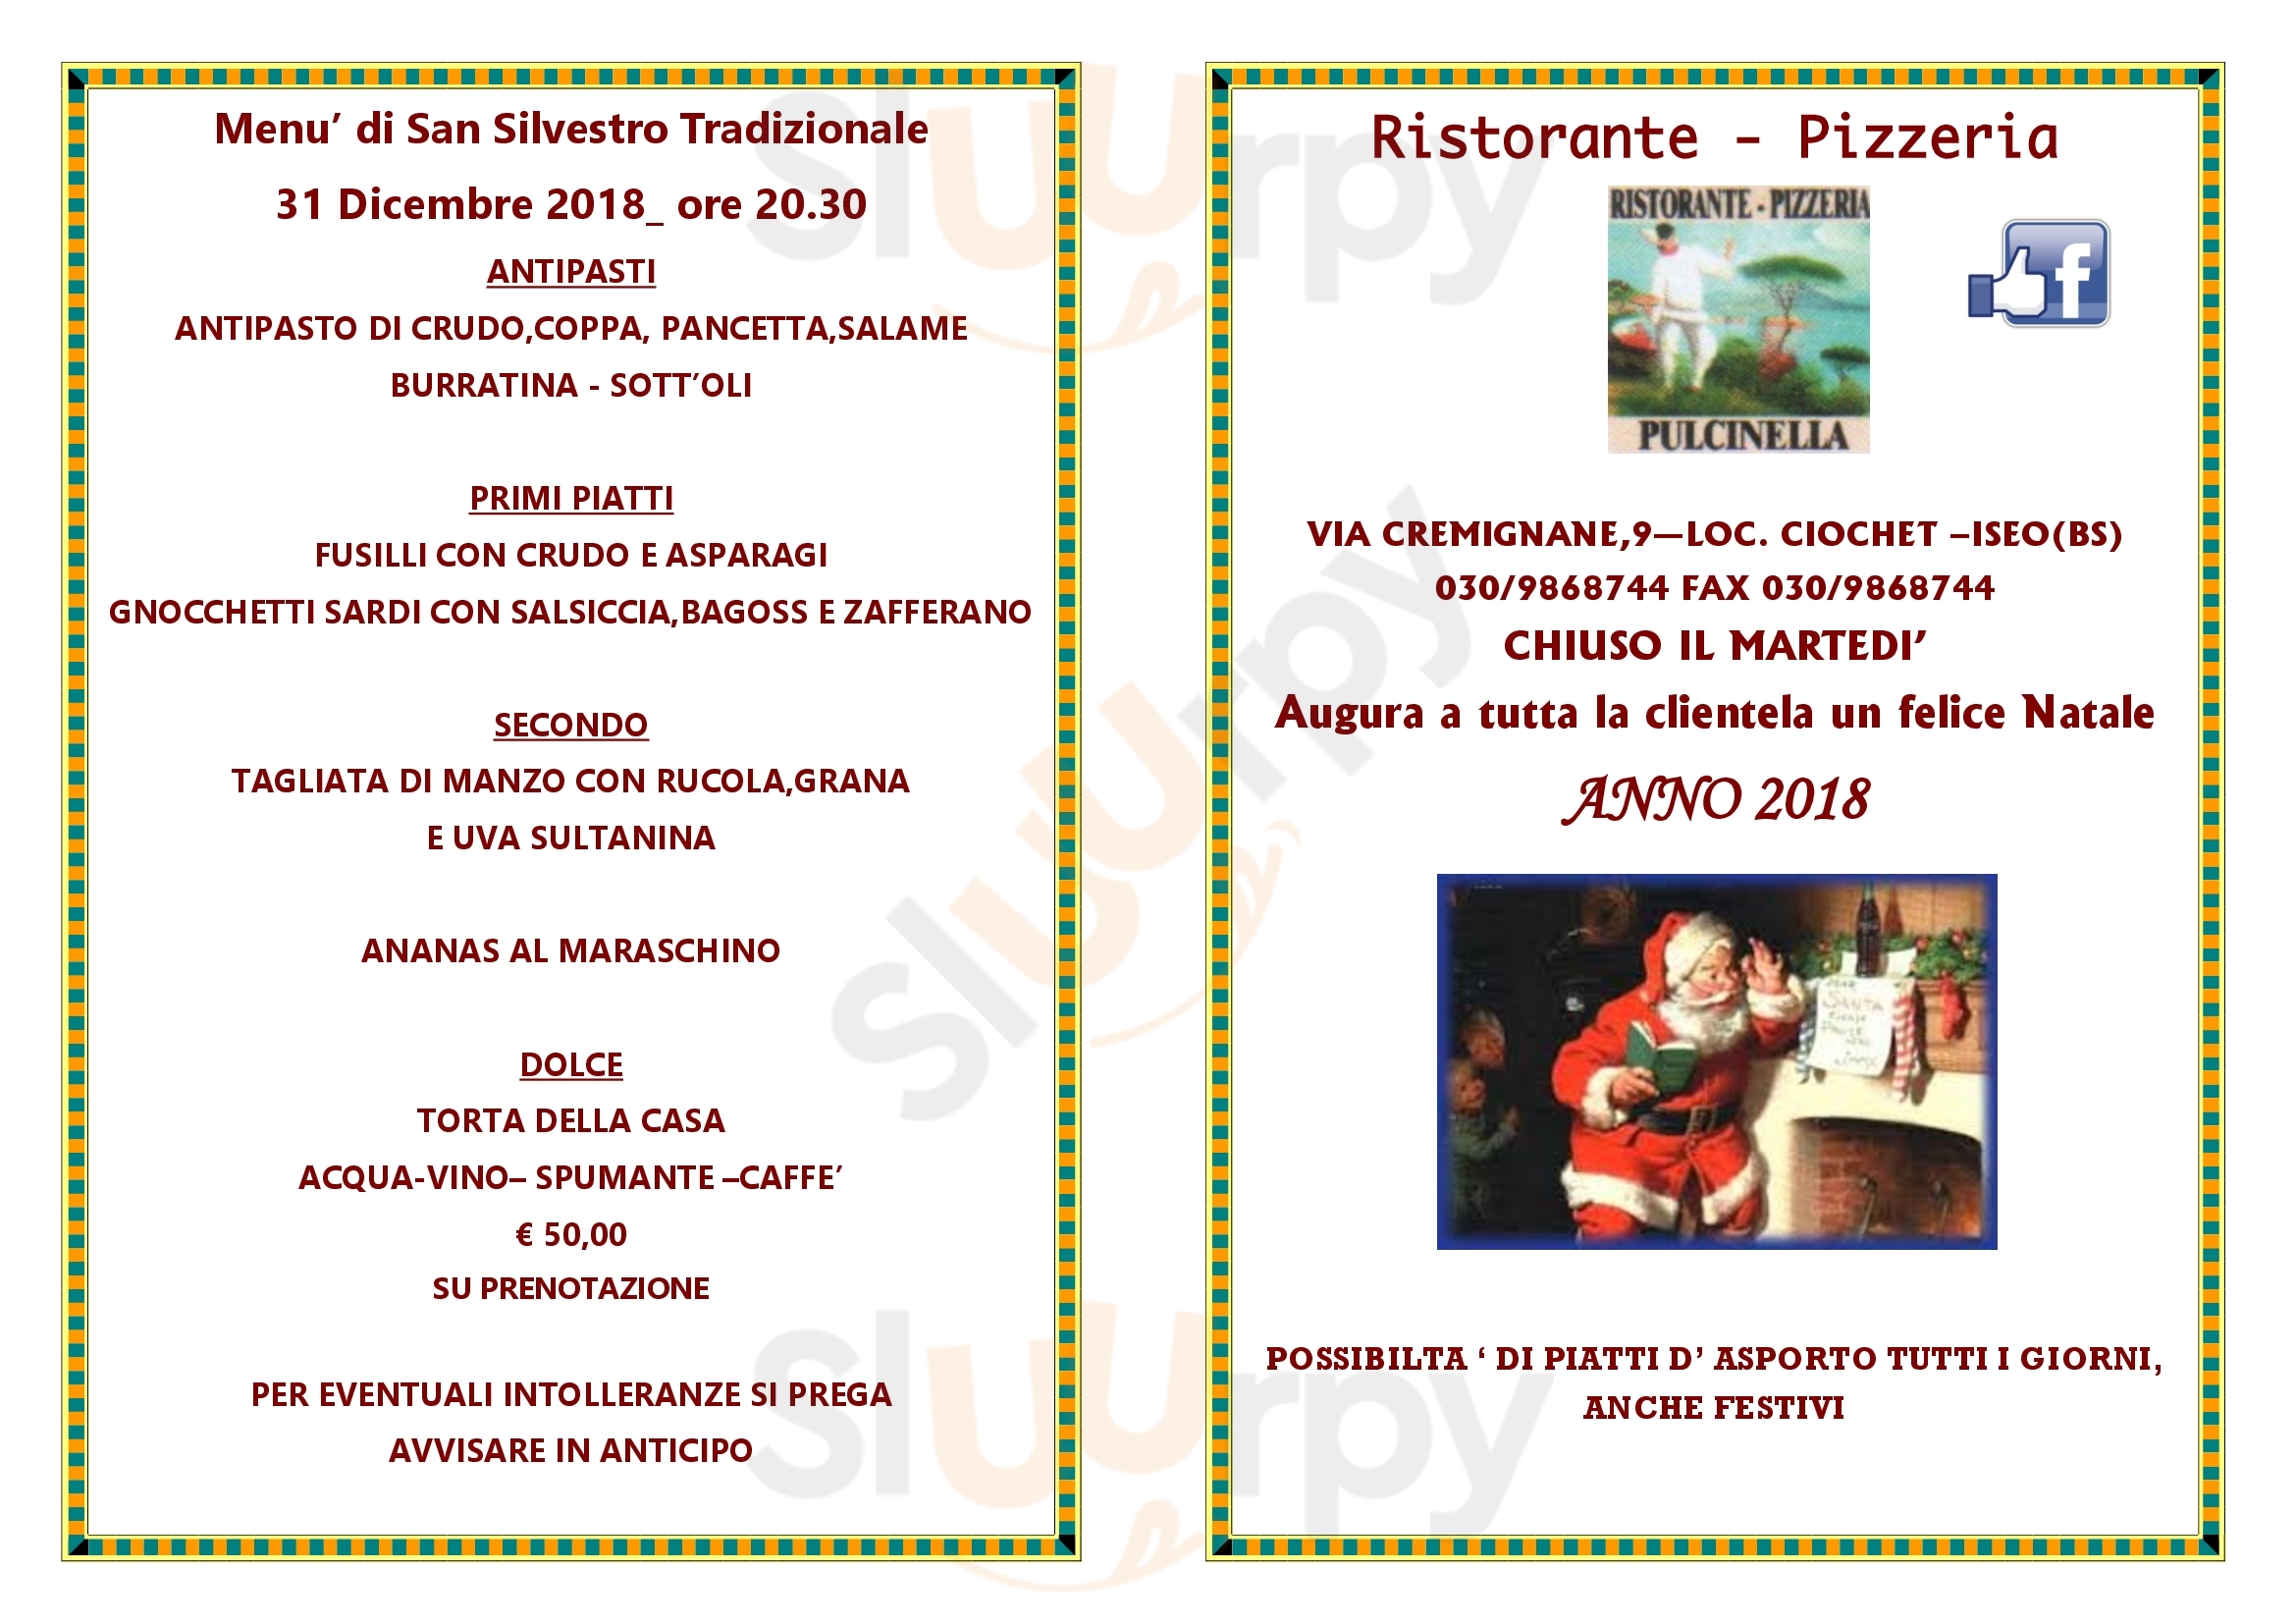 Ristorante Pizzeria Pulcinella Iseo menù 1 pagina